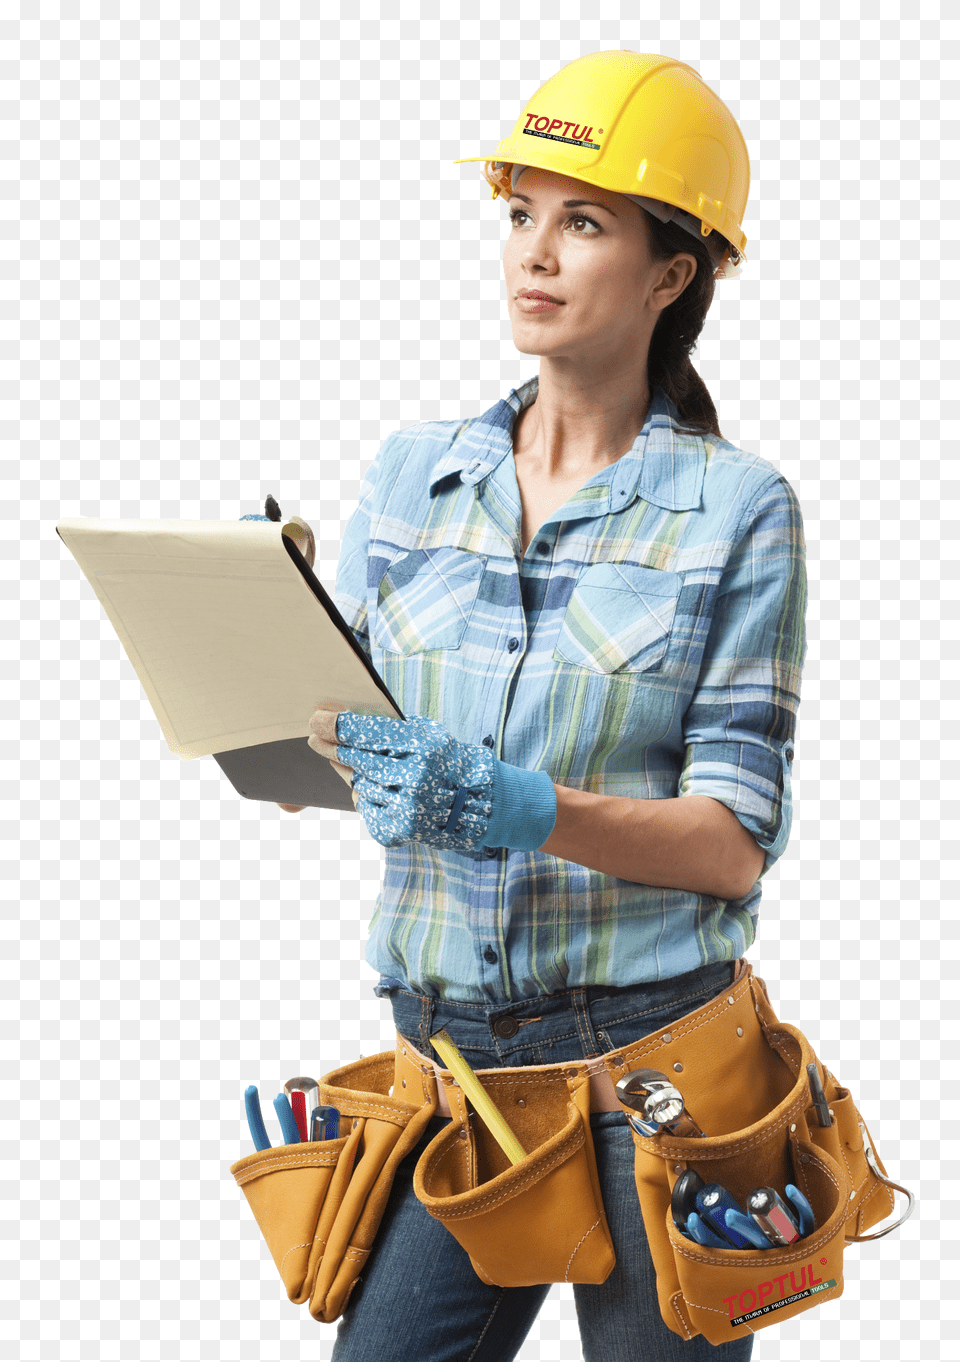 Industrial Worker, Clothing, Glove, Hardhat, Helmet Png Image